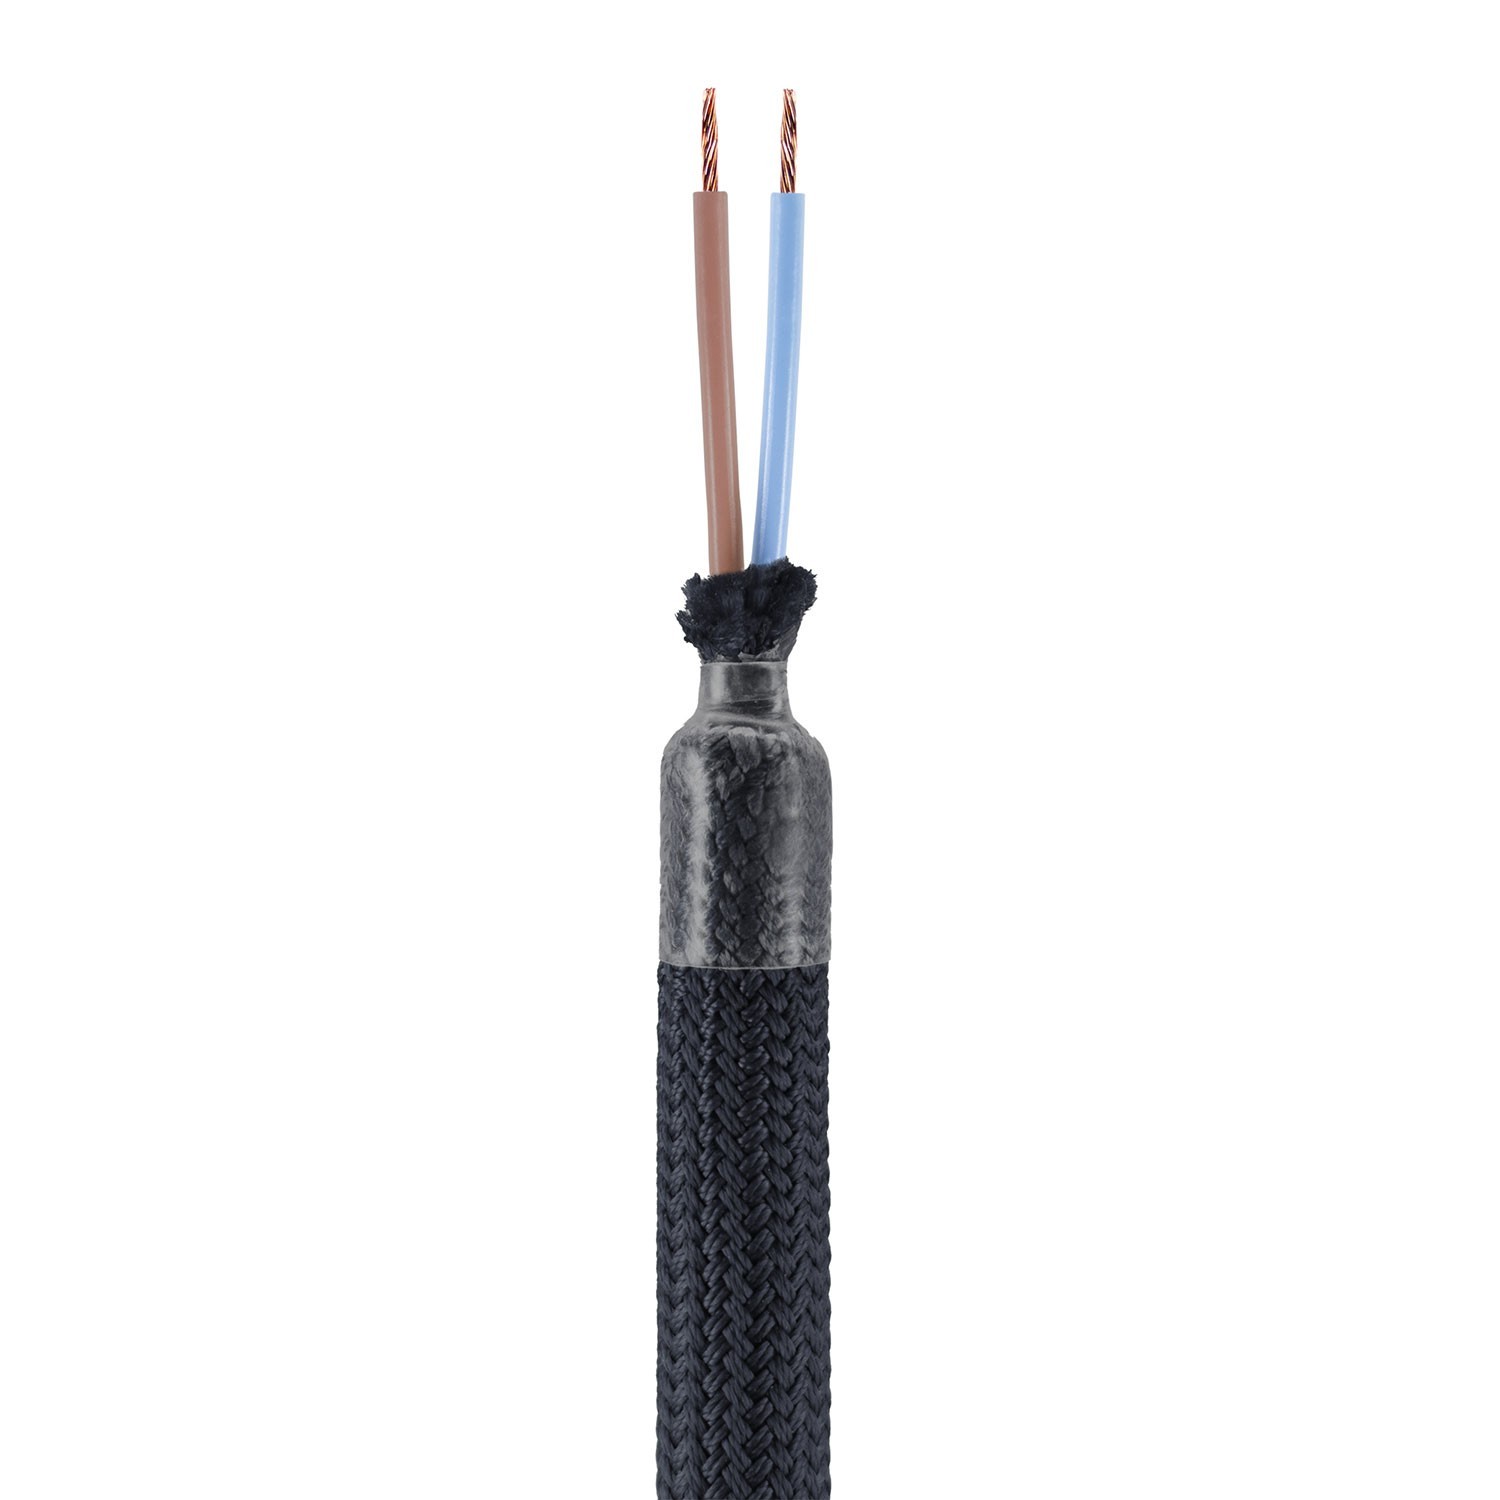 Kit Creative Flex flexibele buis bekleed met zwarte RM04 stof met metalen eindstukken